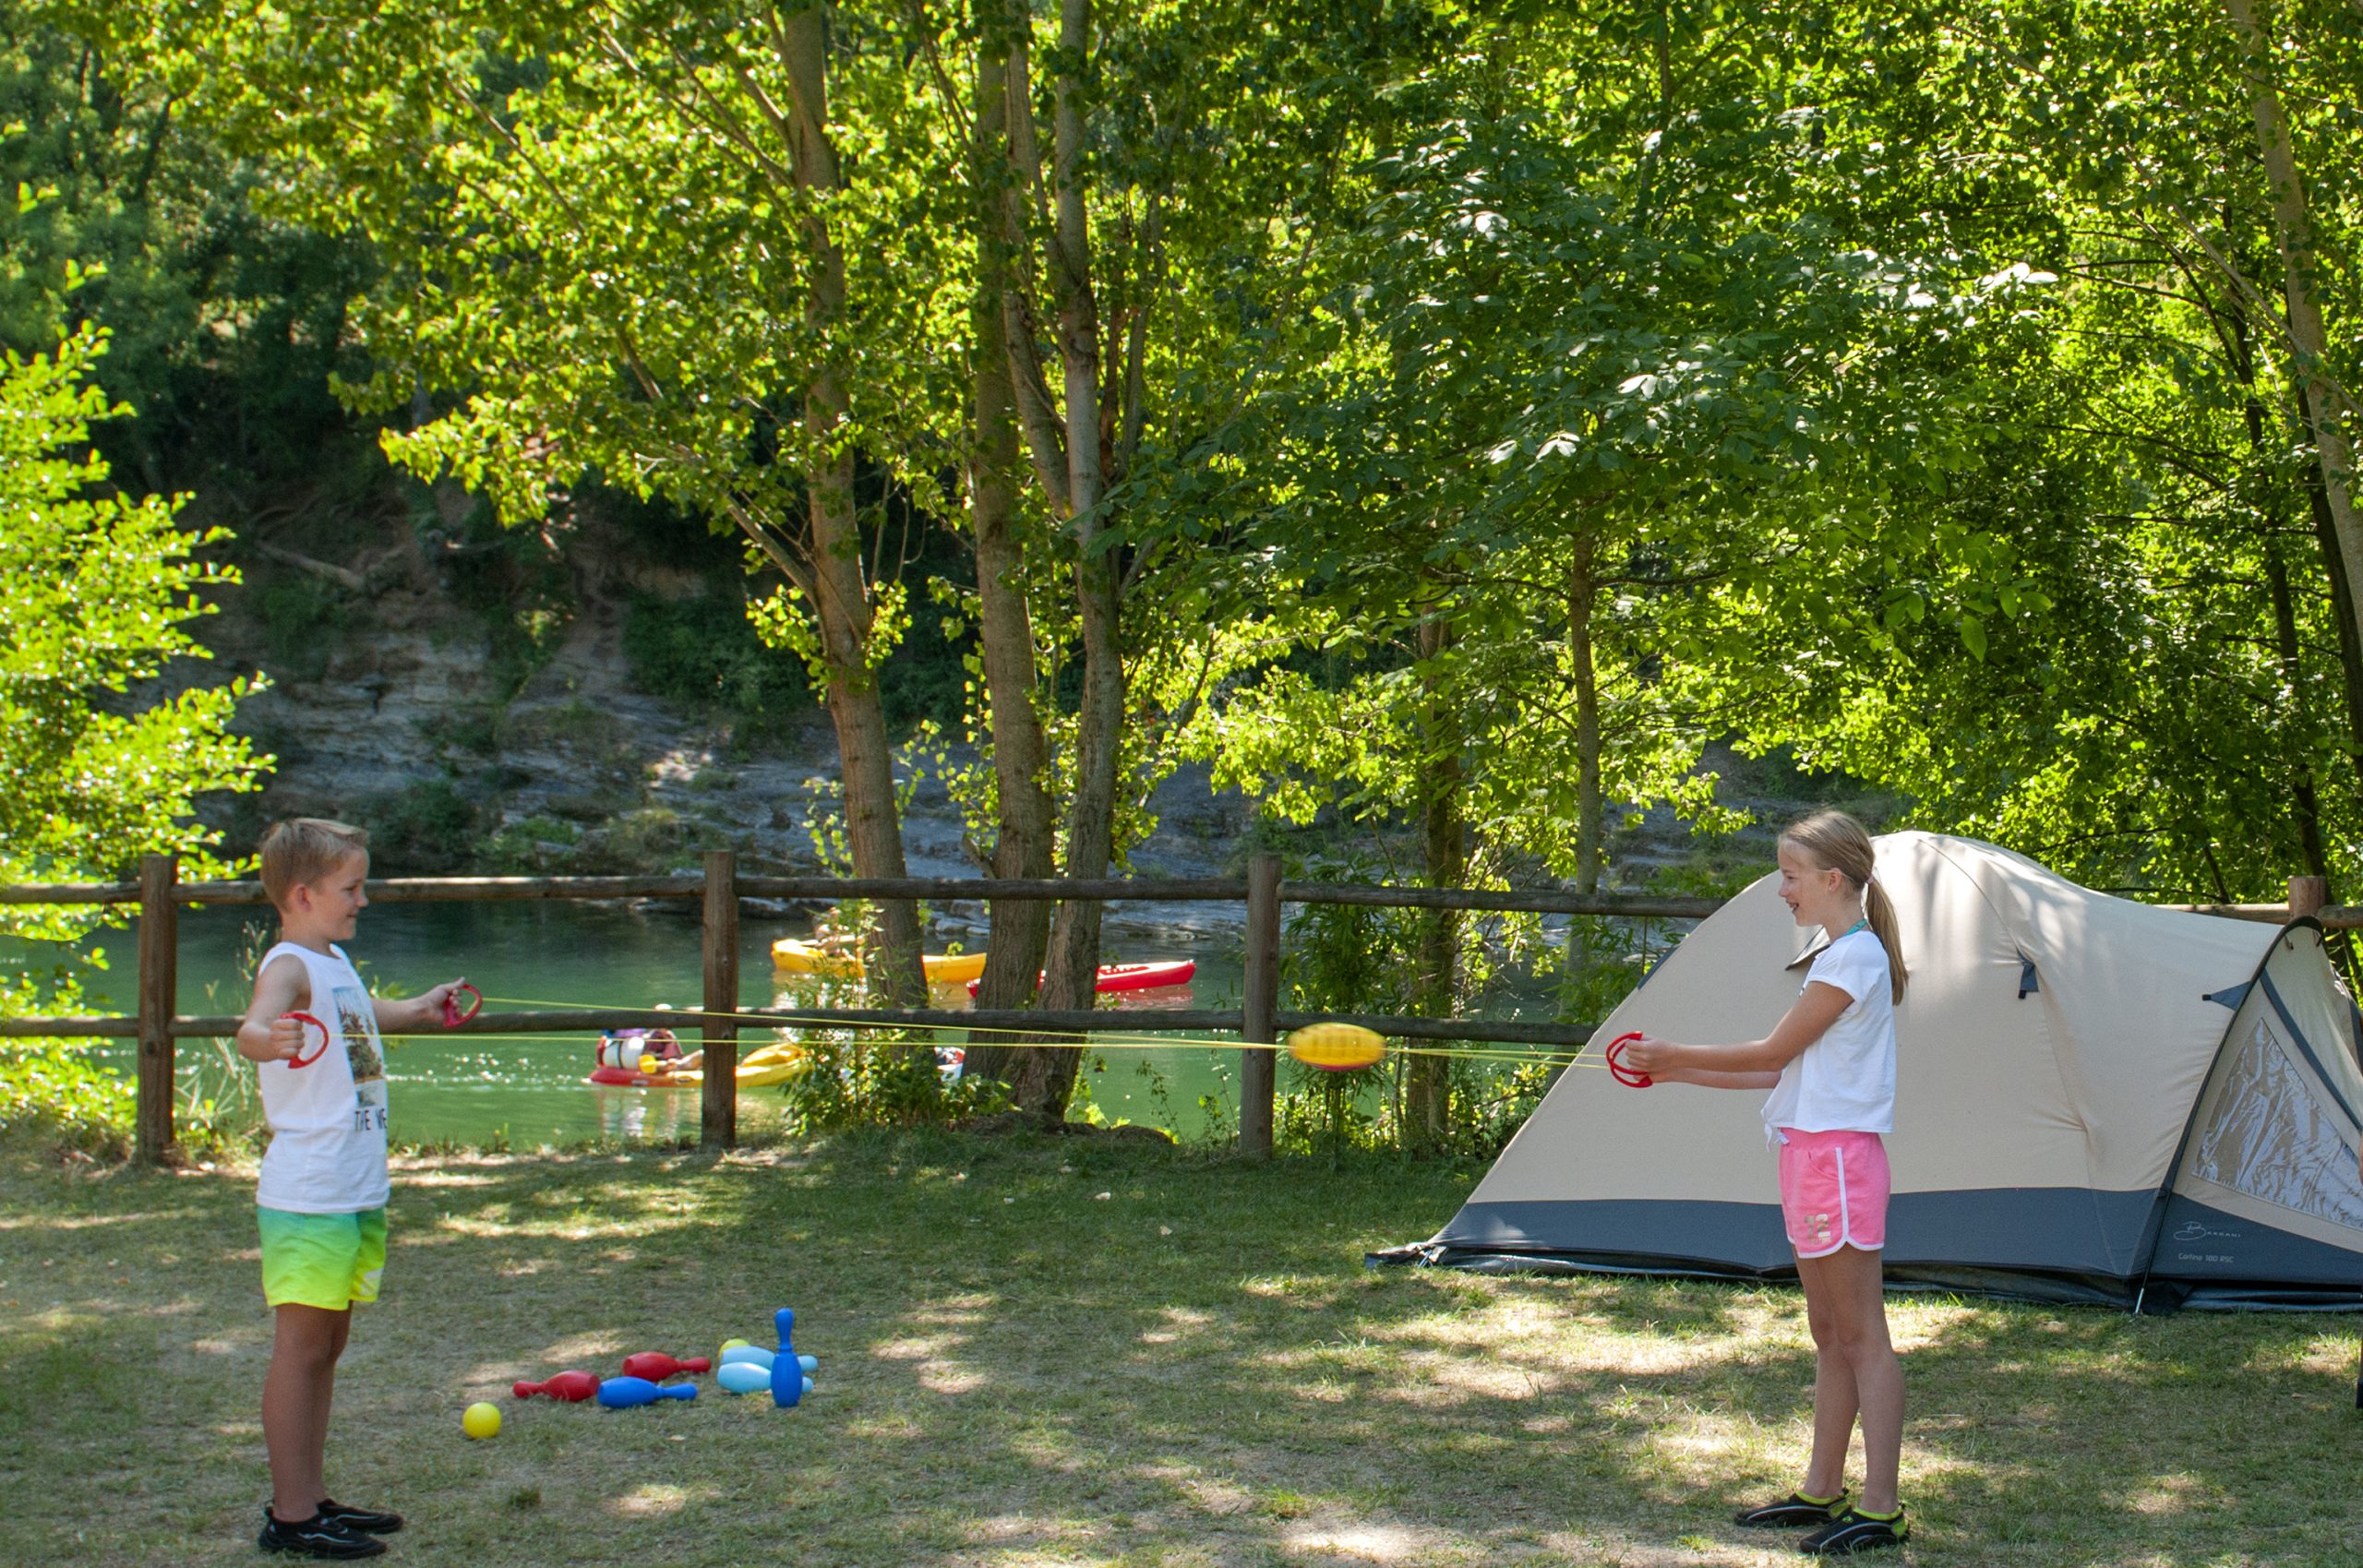 Camping Canoë Gorges du Tarn et ses emplacements tente